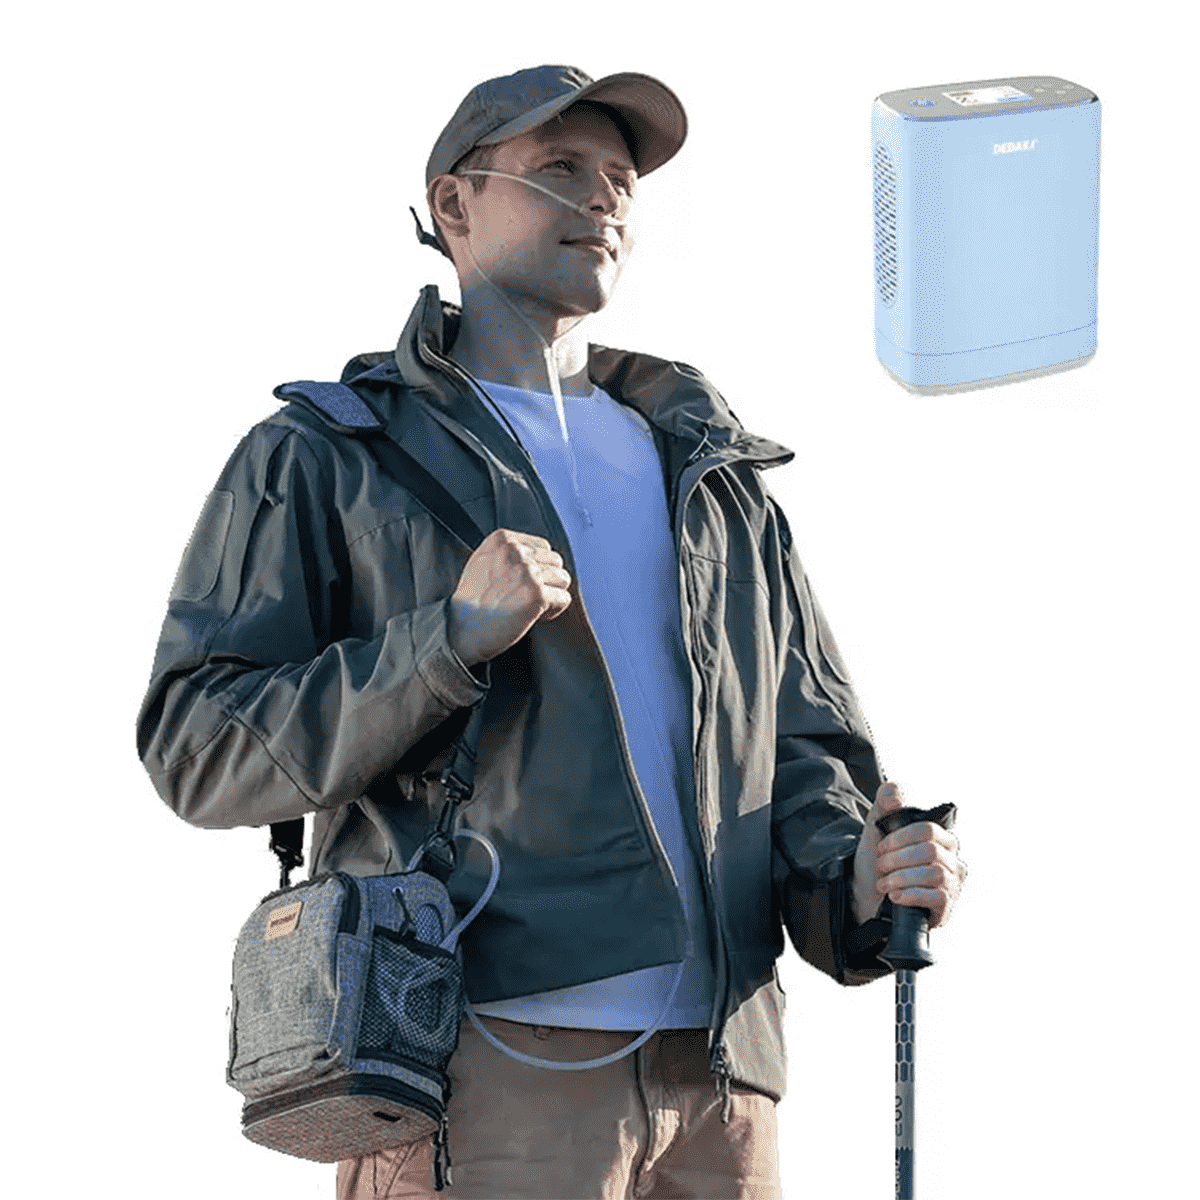 DEDAKJ handheld portable oxygen concentrator with shoulder bag